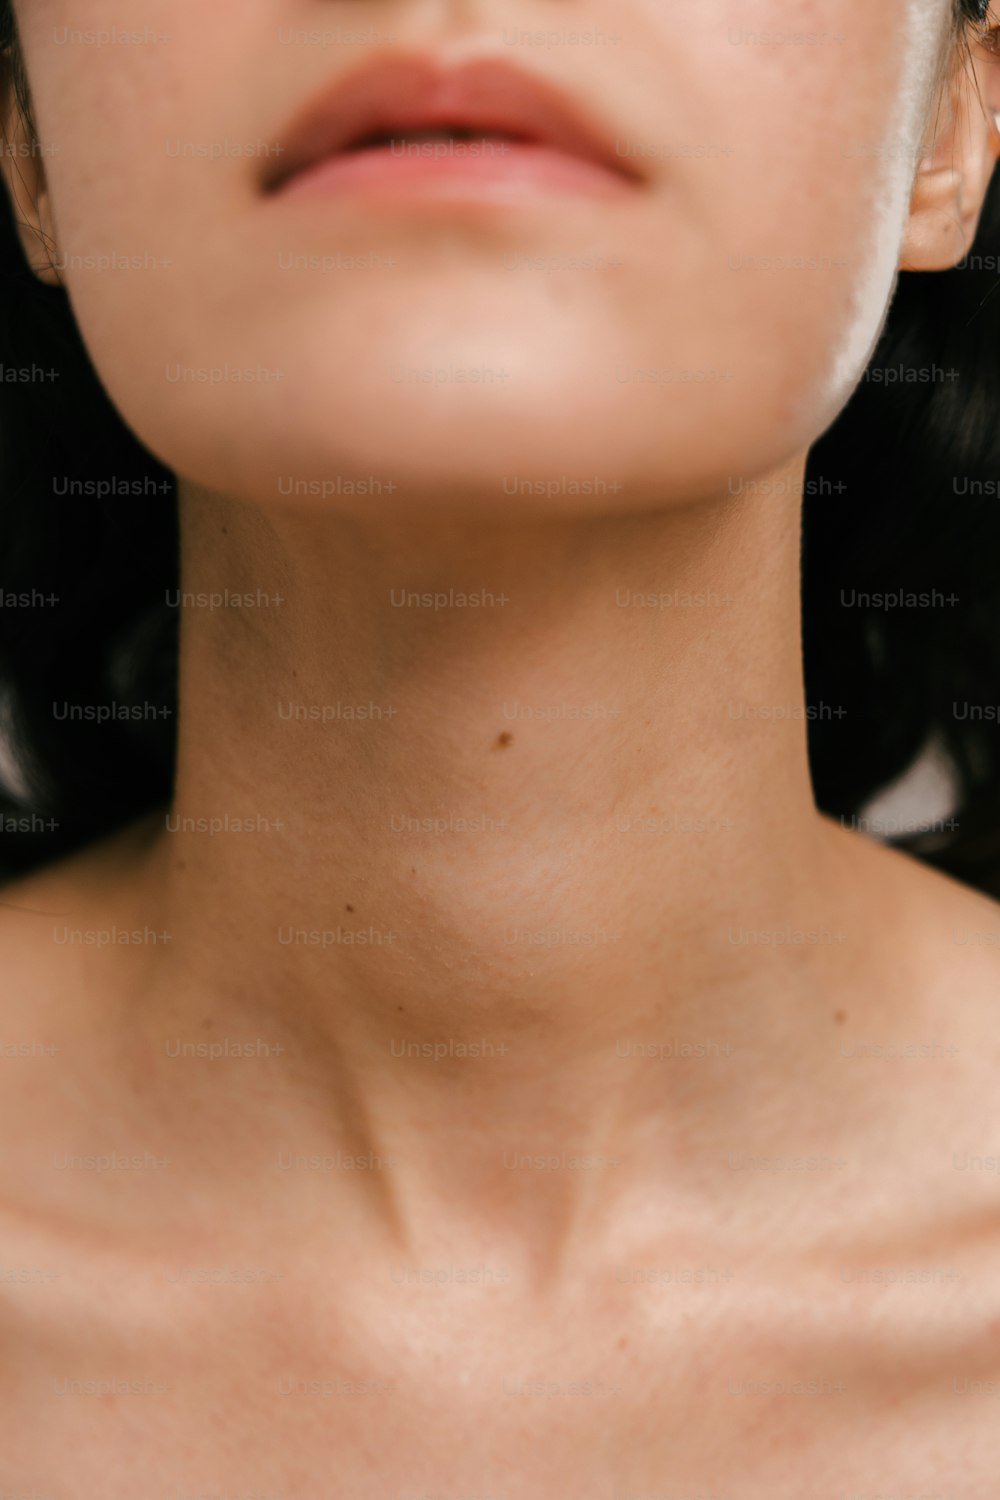 um close up de uma mulher usando um colar